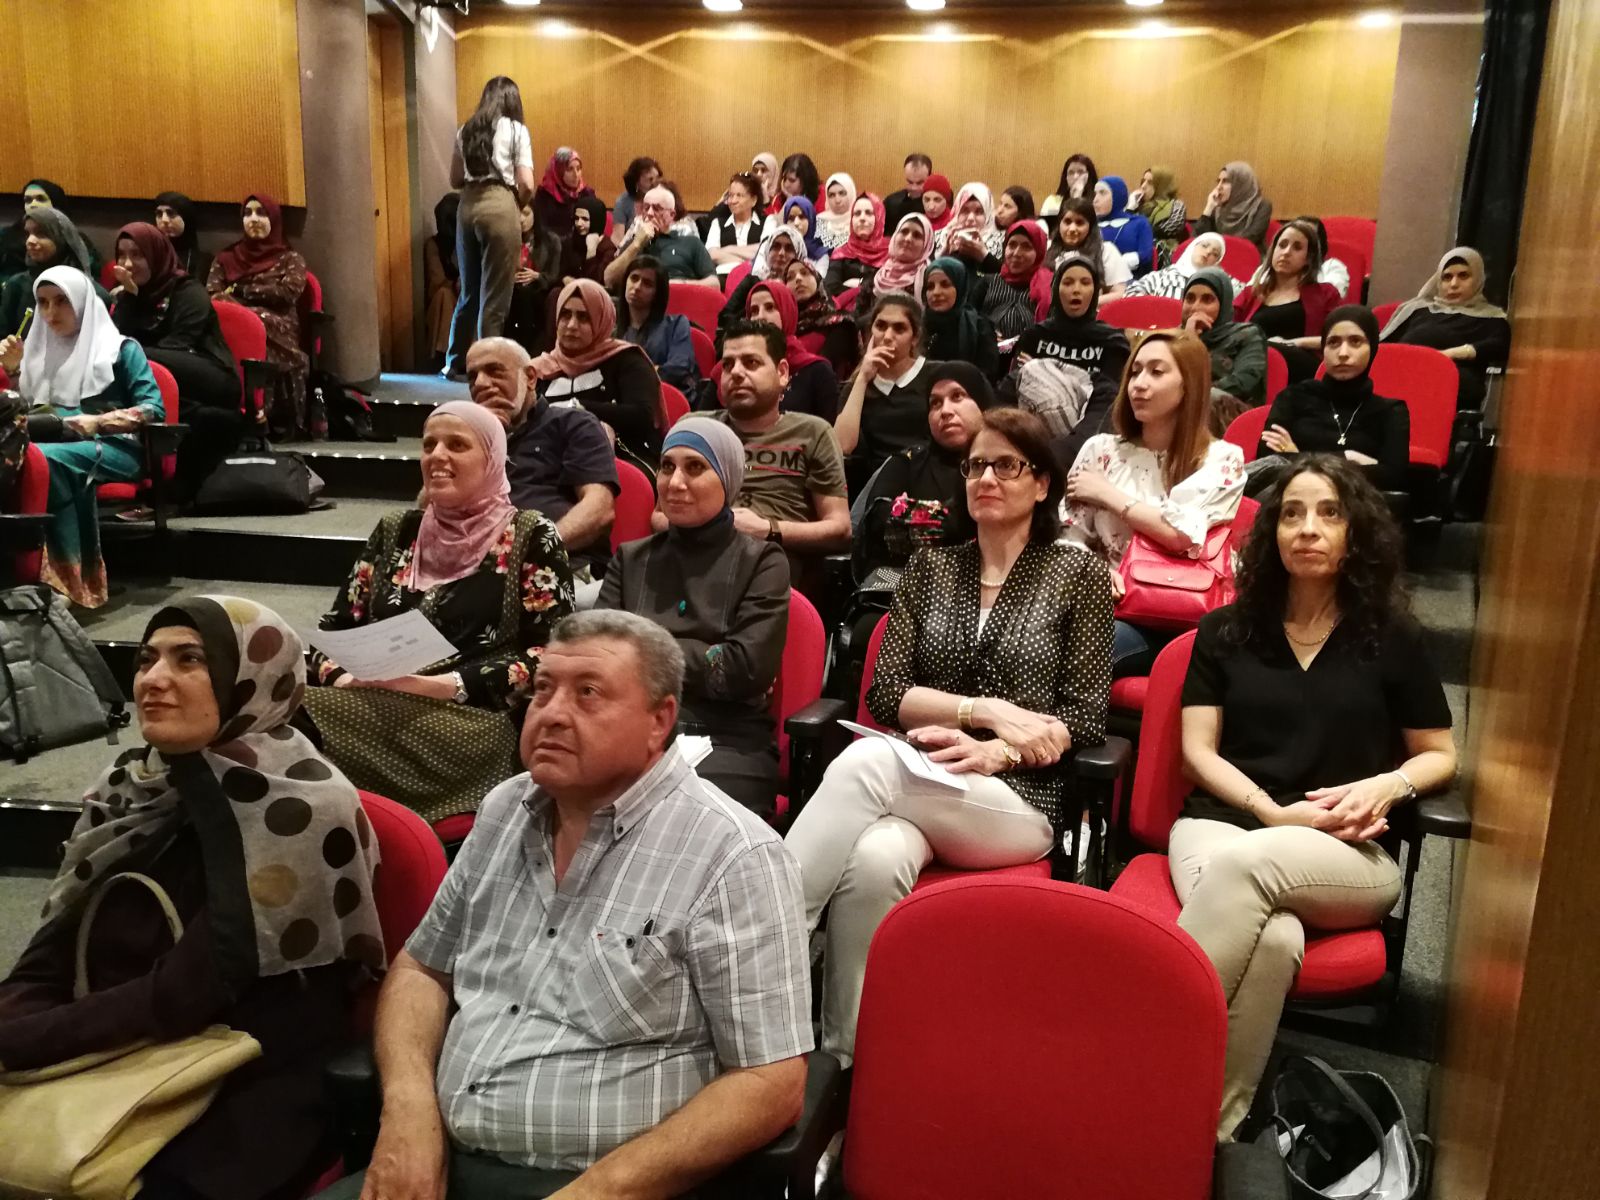 المعهد الأكاديمي العربي للتربية في كلية بيت بيرل يبحث تحدّيات التربية العملية عبر حوار تربوي بين الطلاب والمعلمين والمرشدين